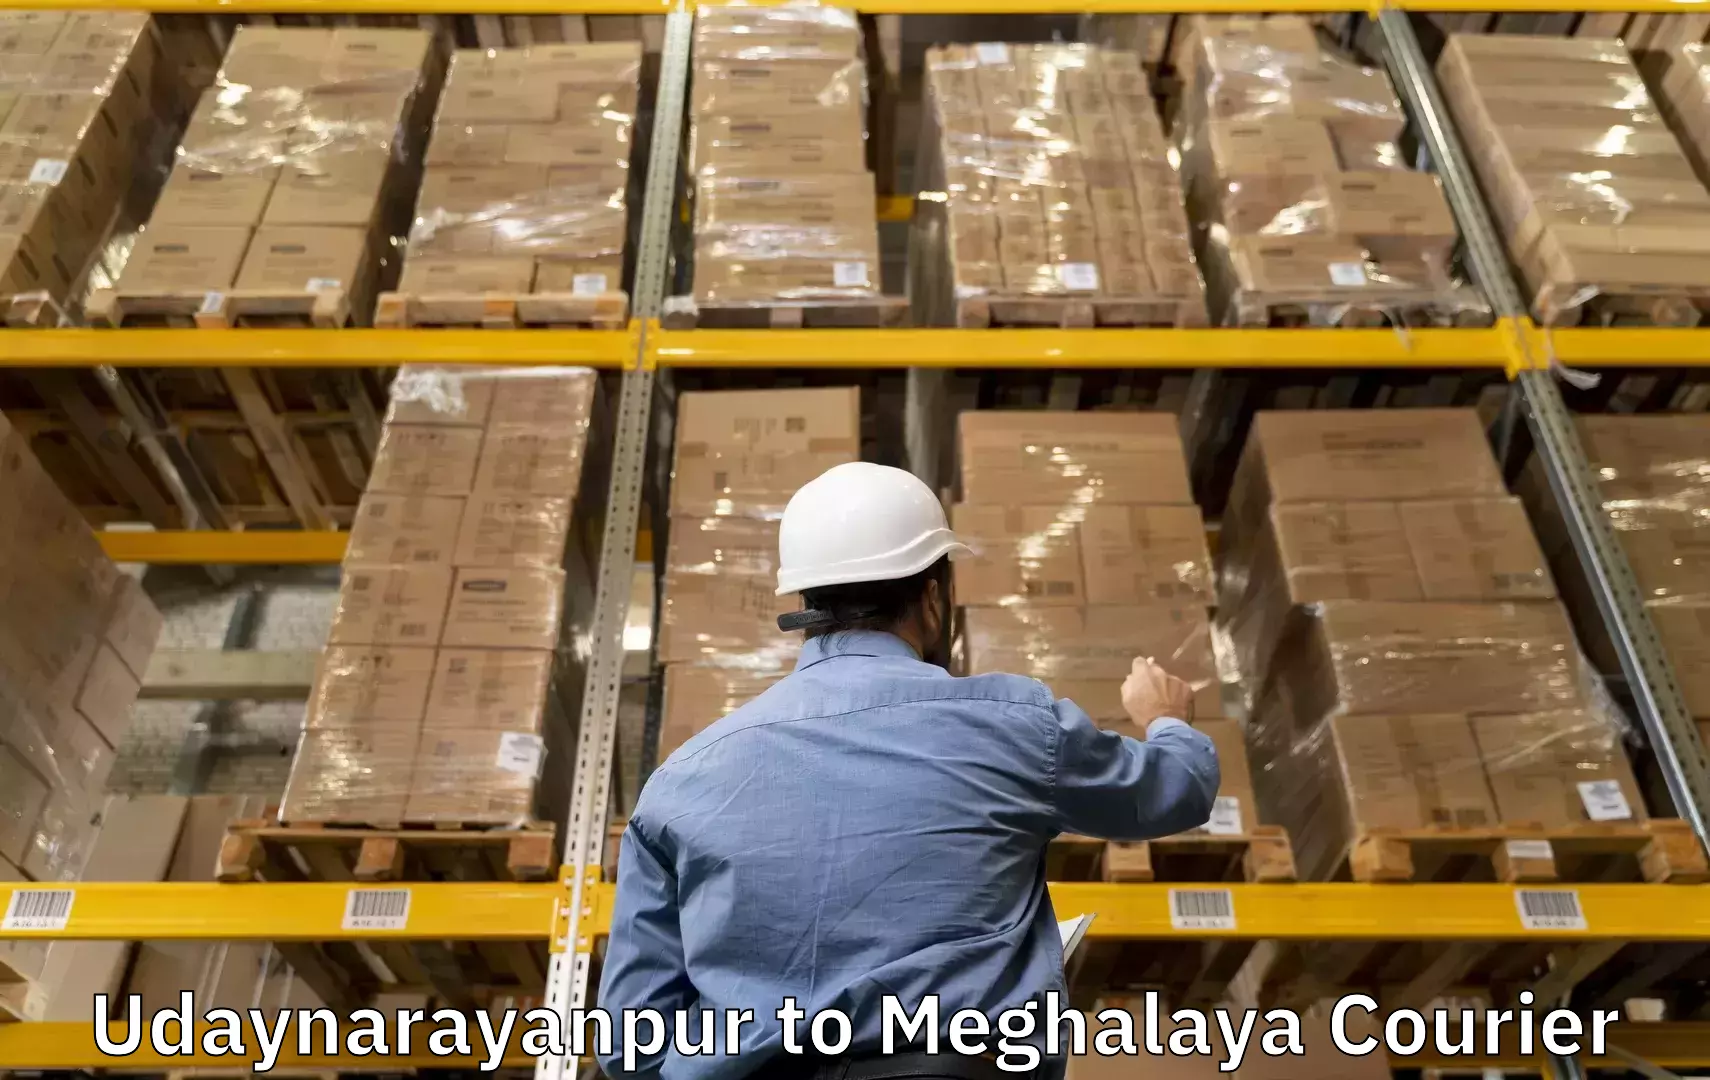 Baggage shipping experience Udaynarayanpur to Shillong